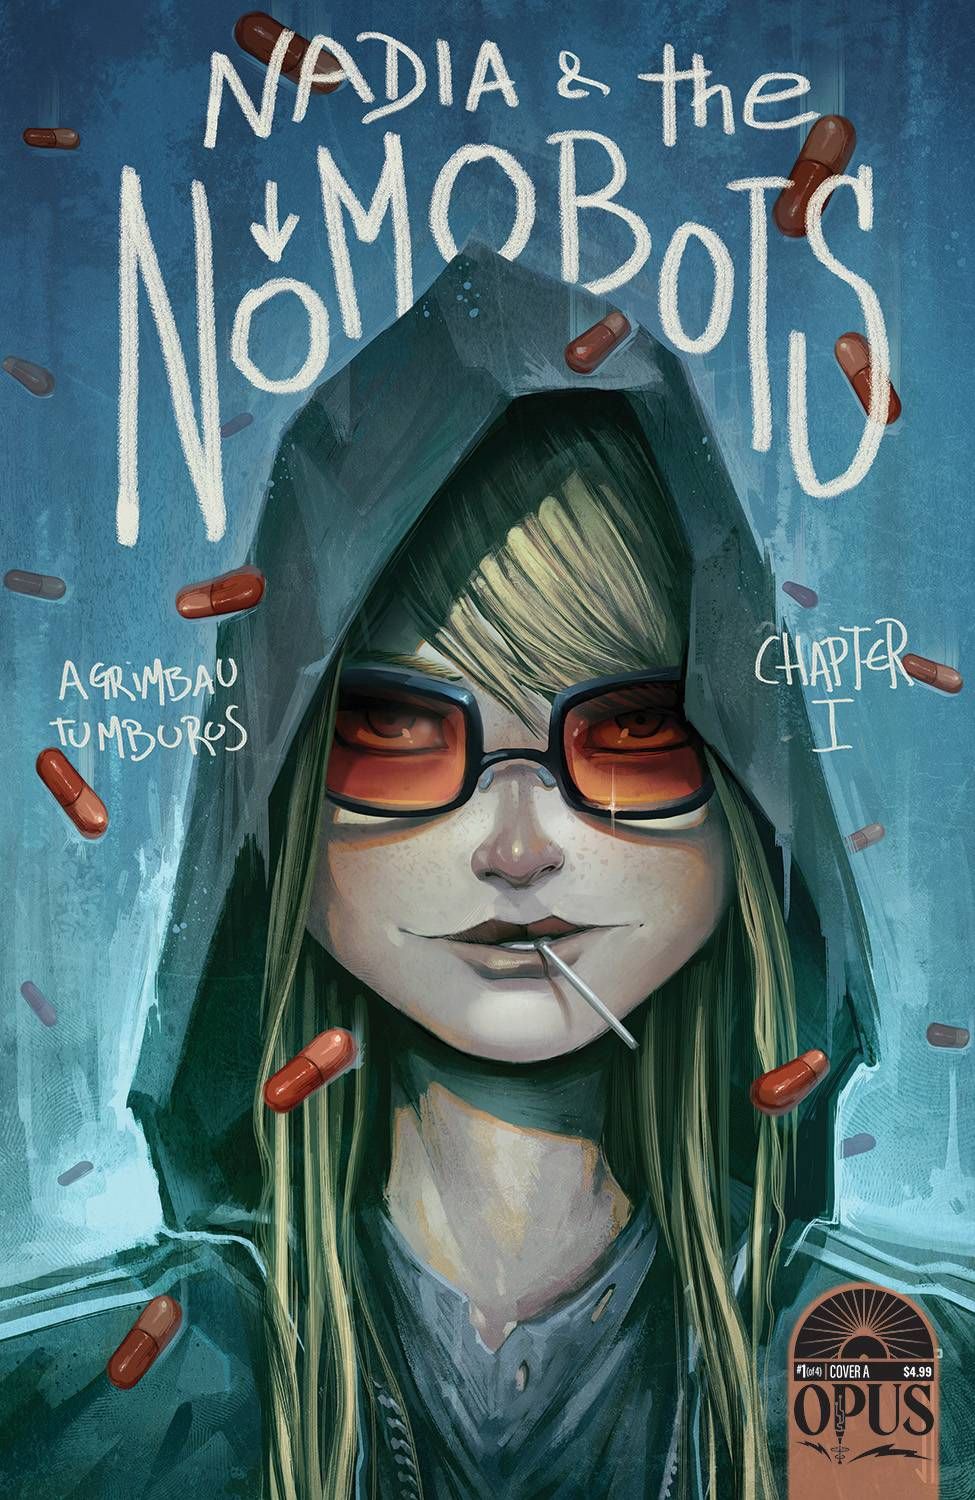 Nadia & the Nomobots Comic